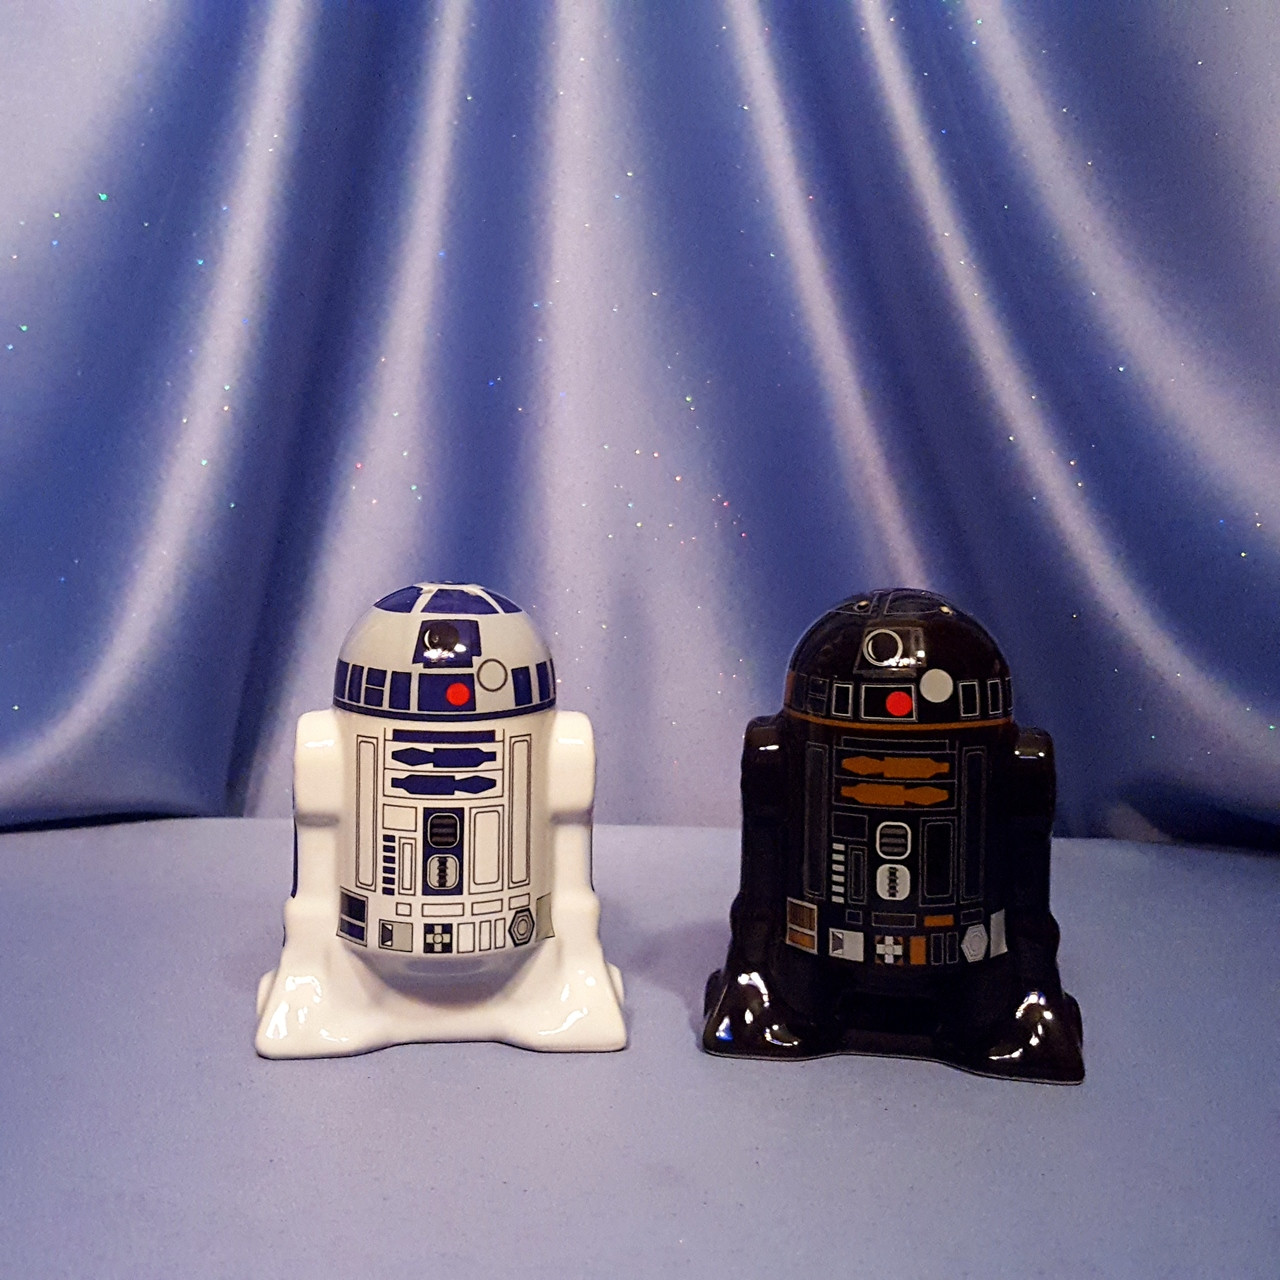 Star Wars R2-D2 & R2-Q5 Salt & Pepper Shaker Set by Underground Toys -  Disney. - Now and Then Galleria LLC